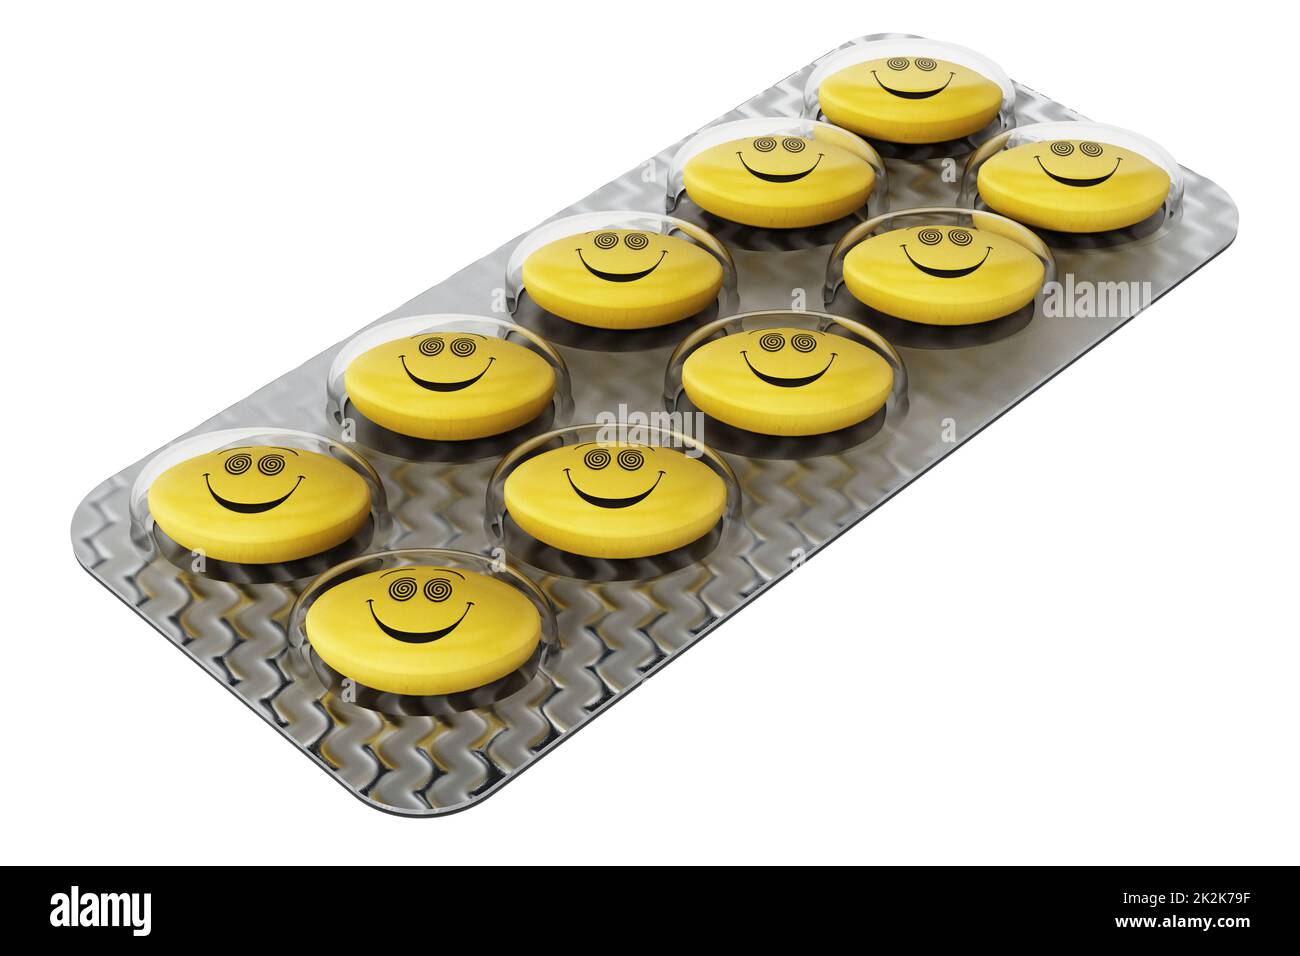 Pilules antidépresseurs avec visage souriant. 3D illustration Banque D'Images